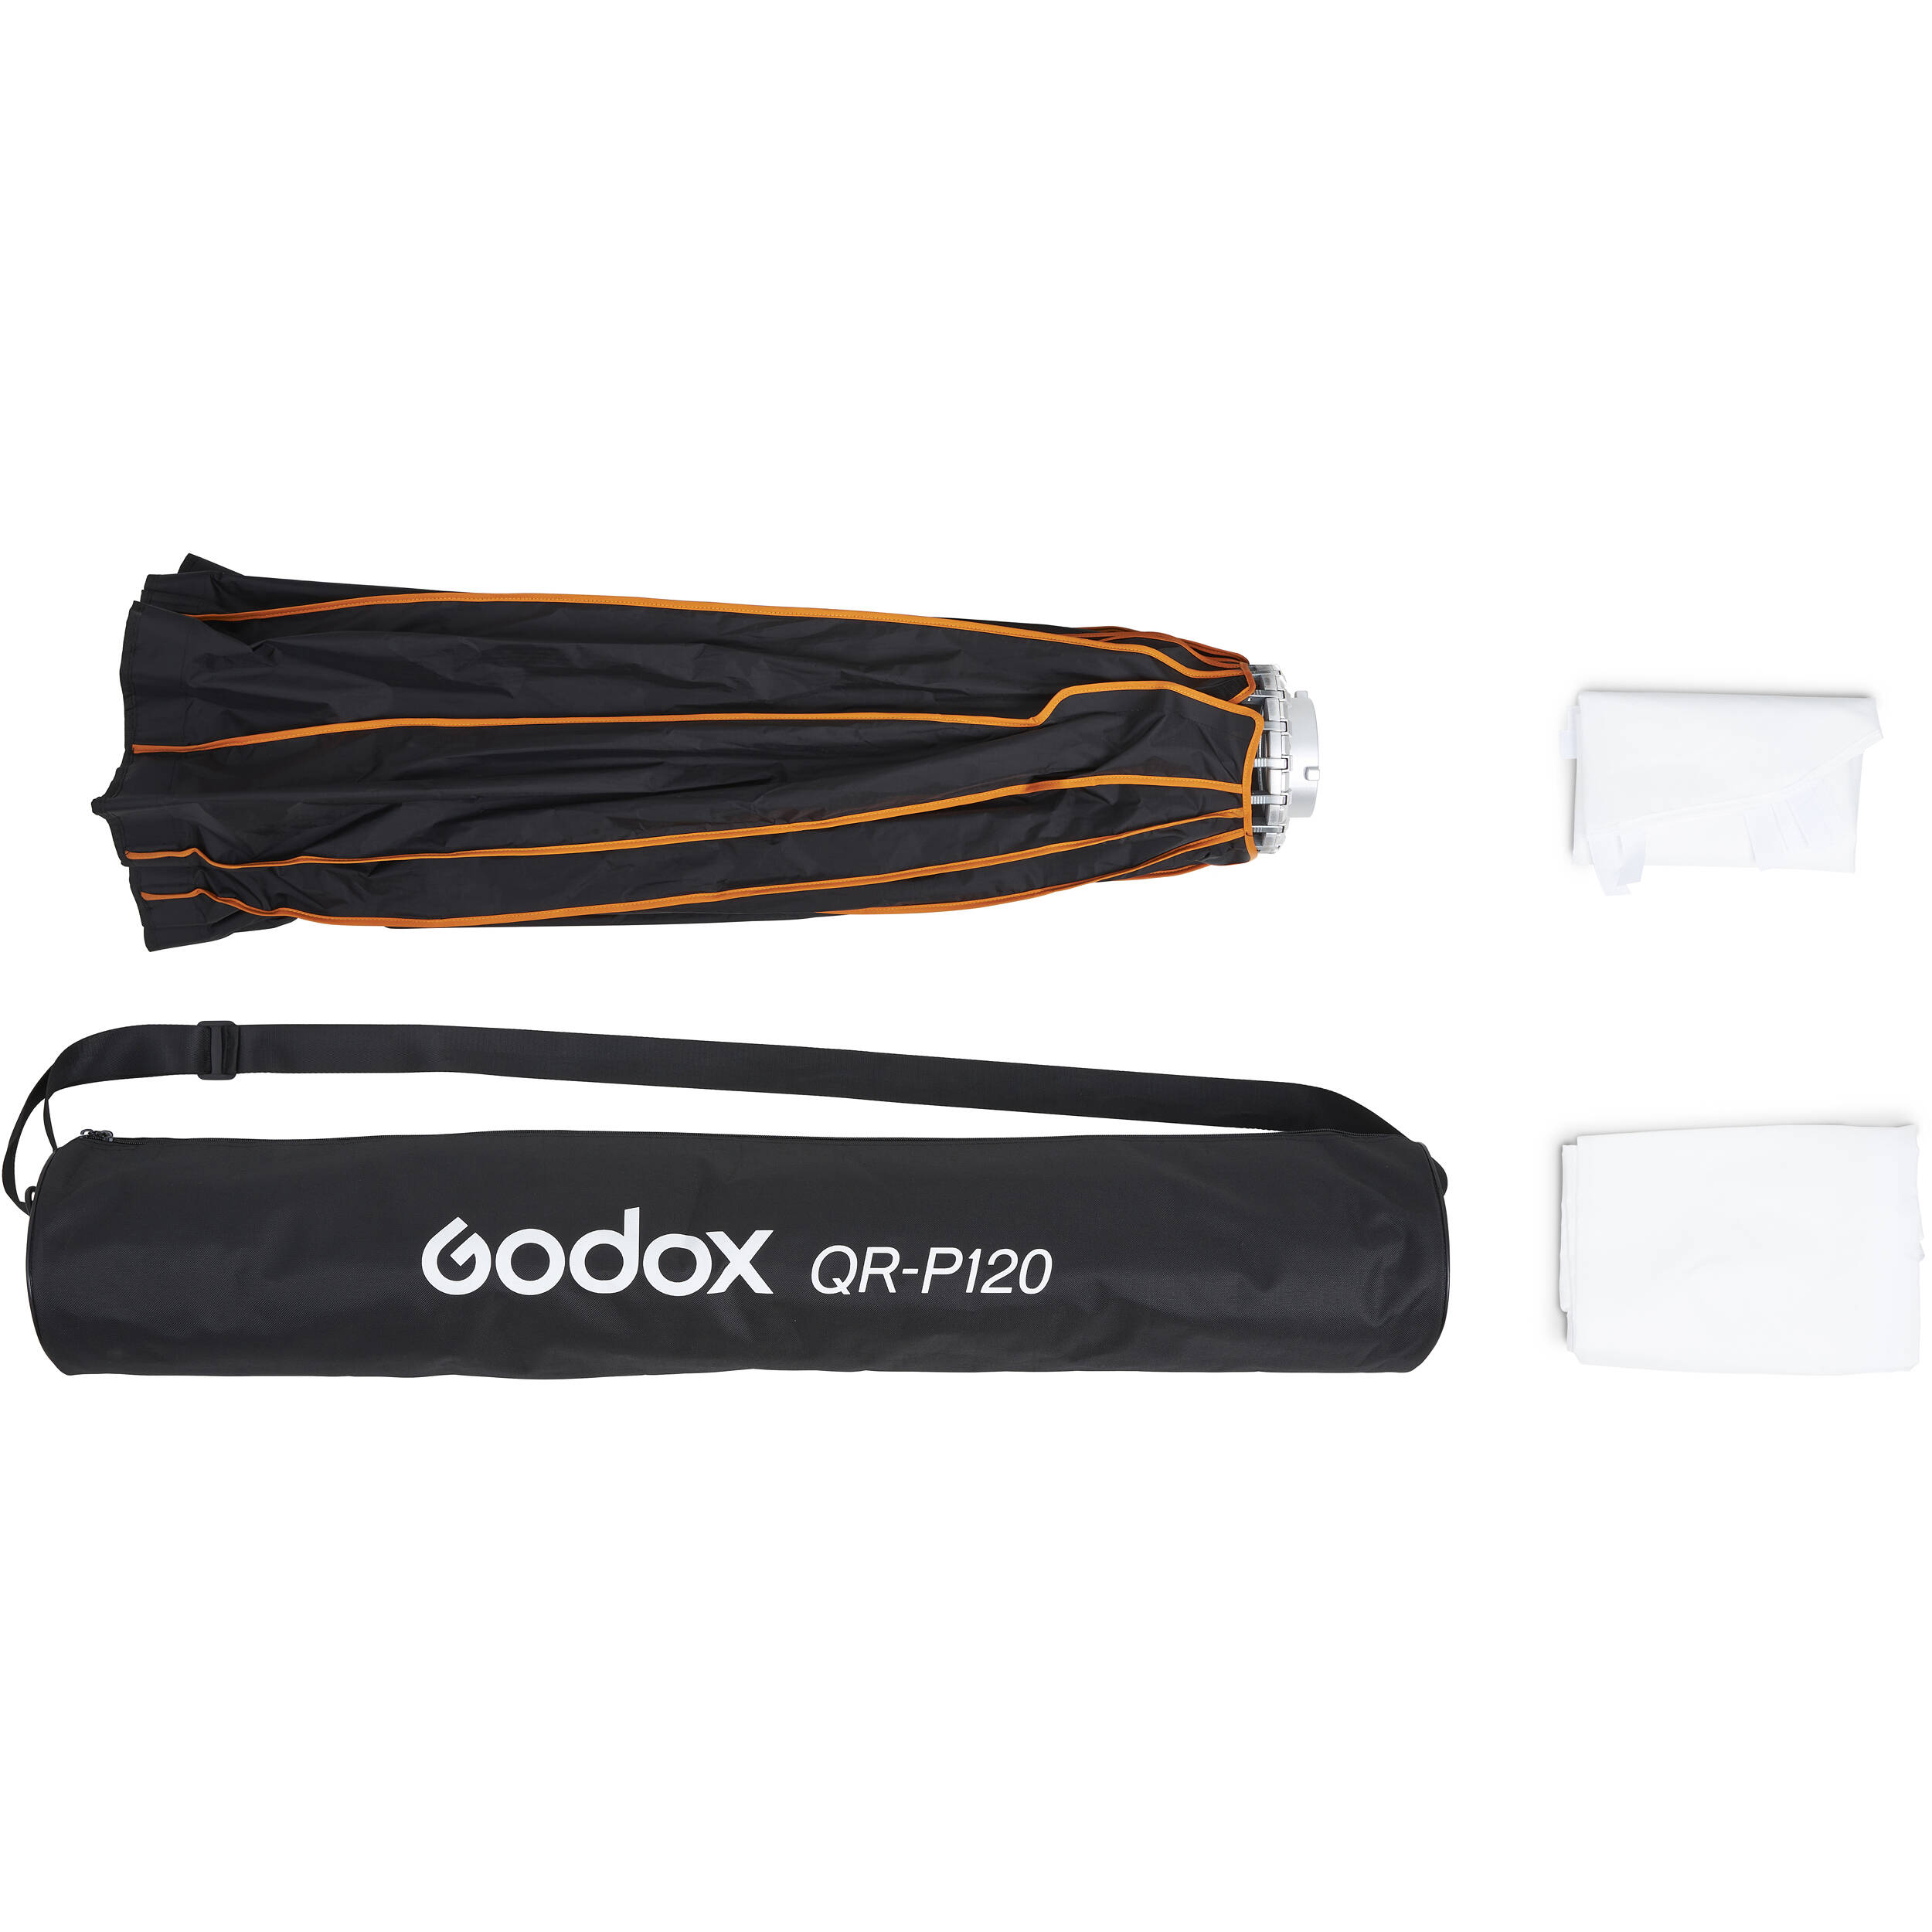   Godox QR-P120     Ultra-mart